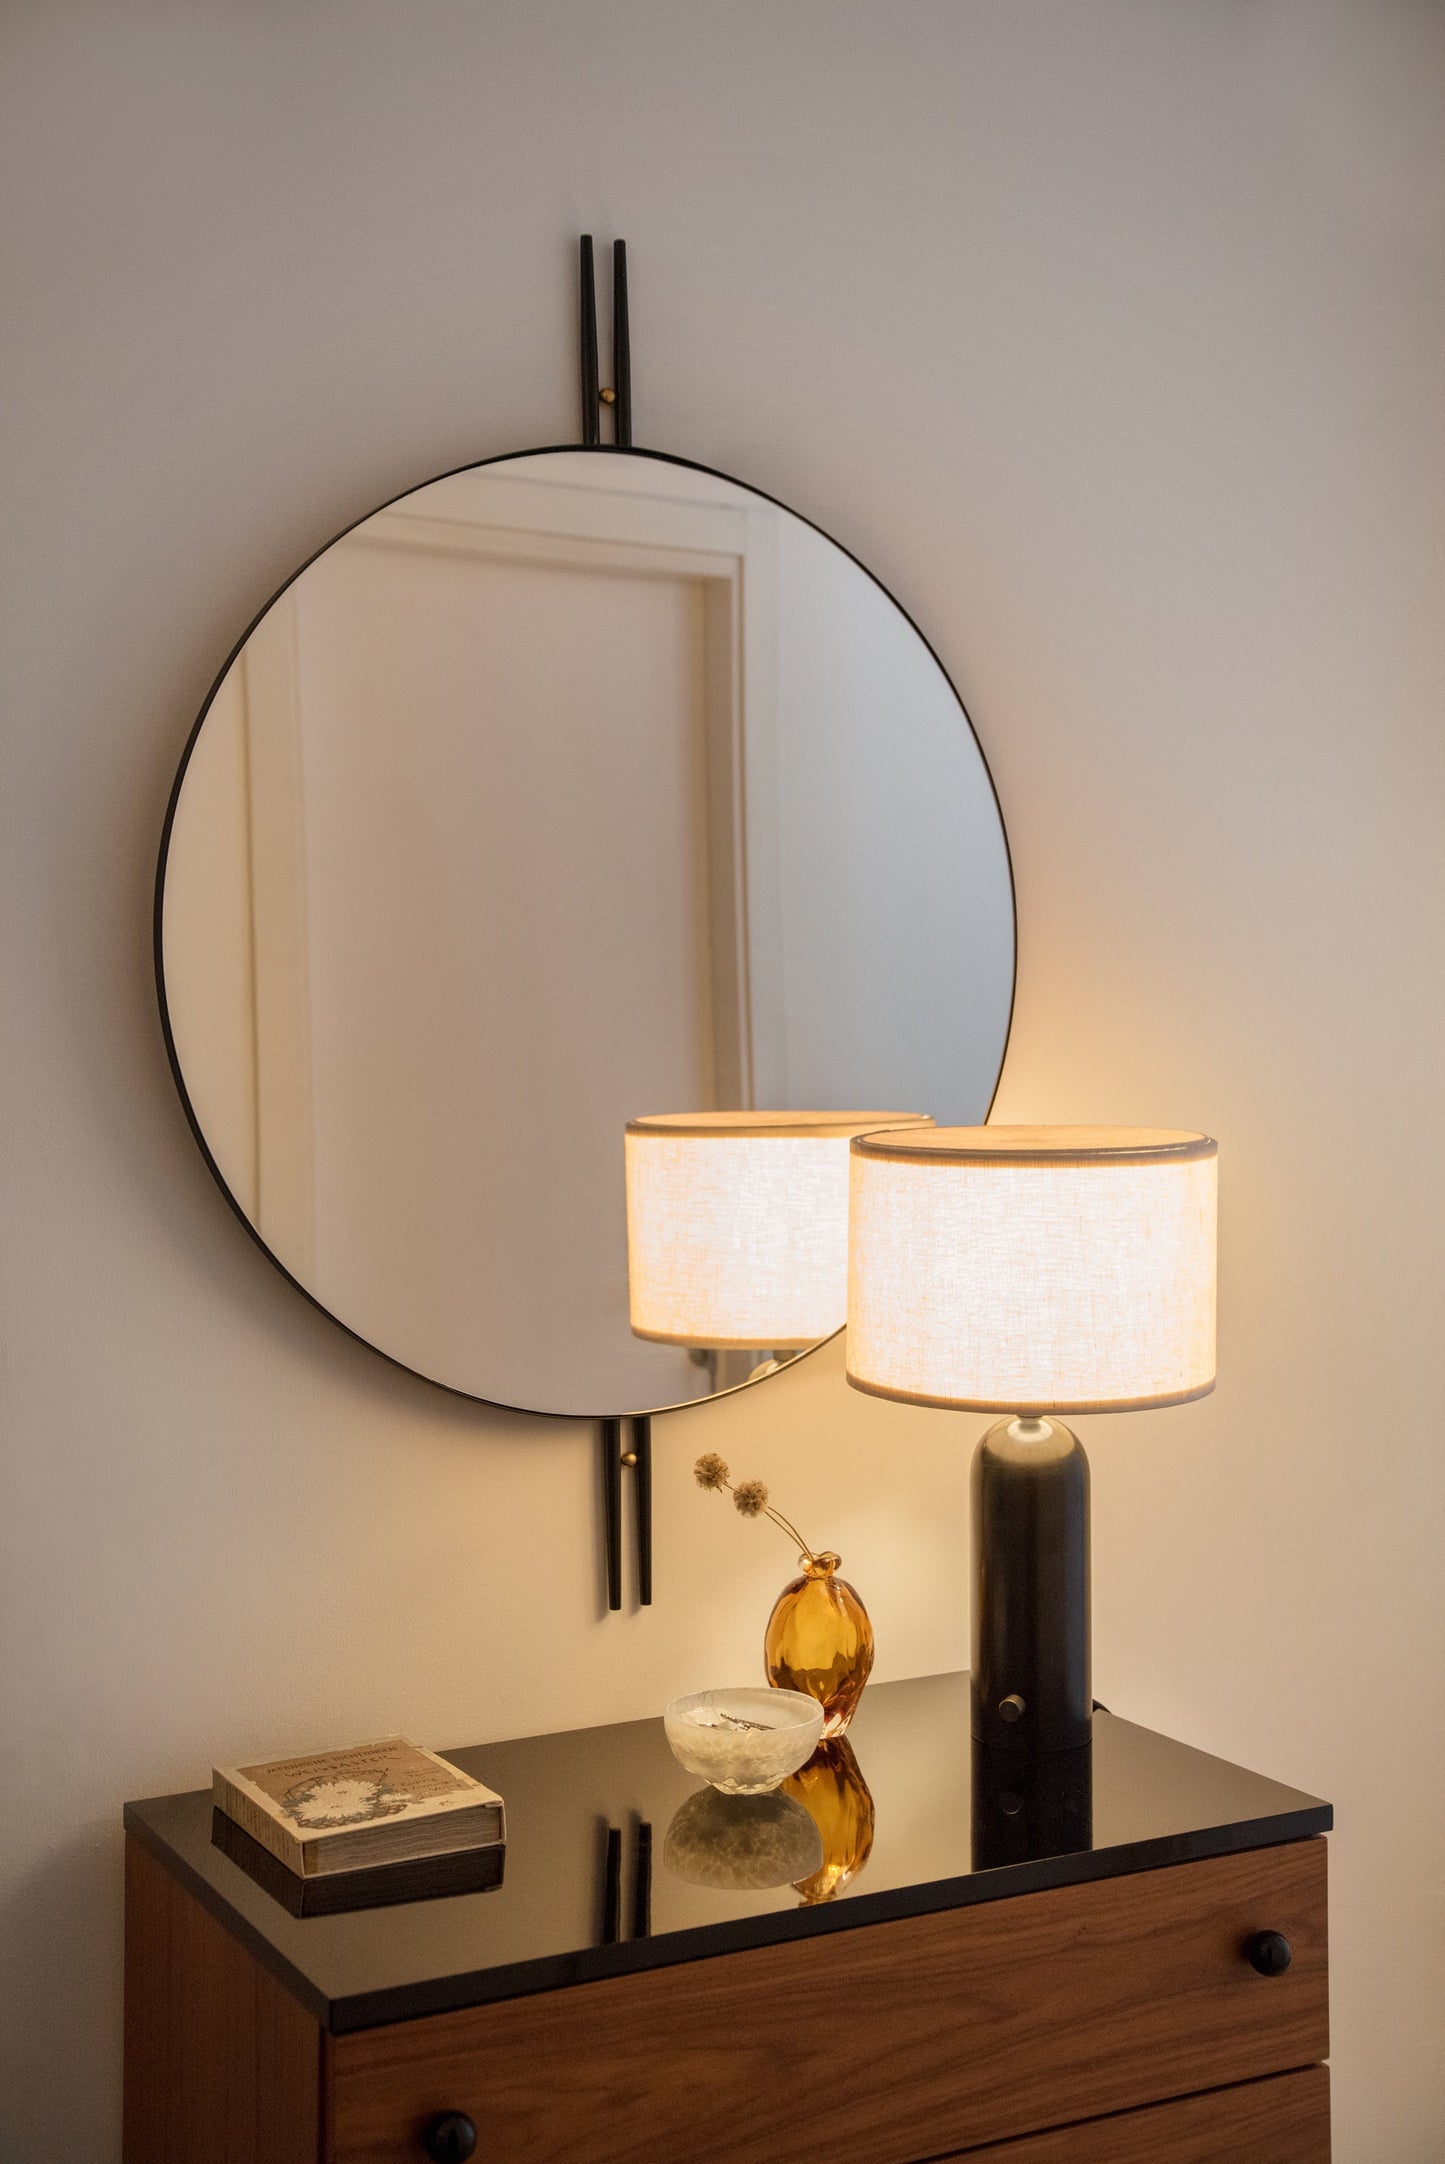 IOI Wall Mirror - Round, 80cm